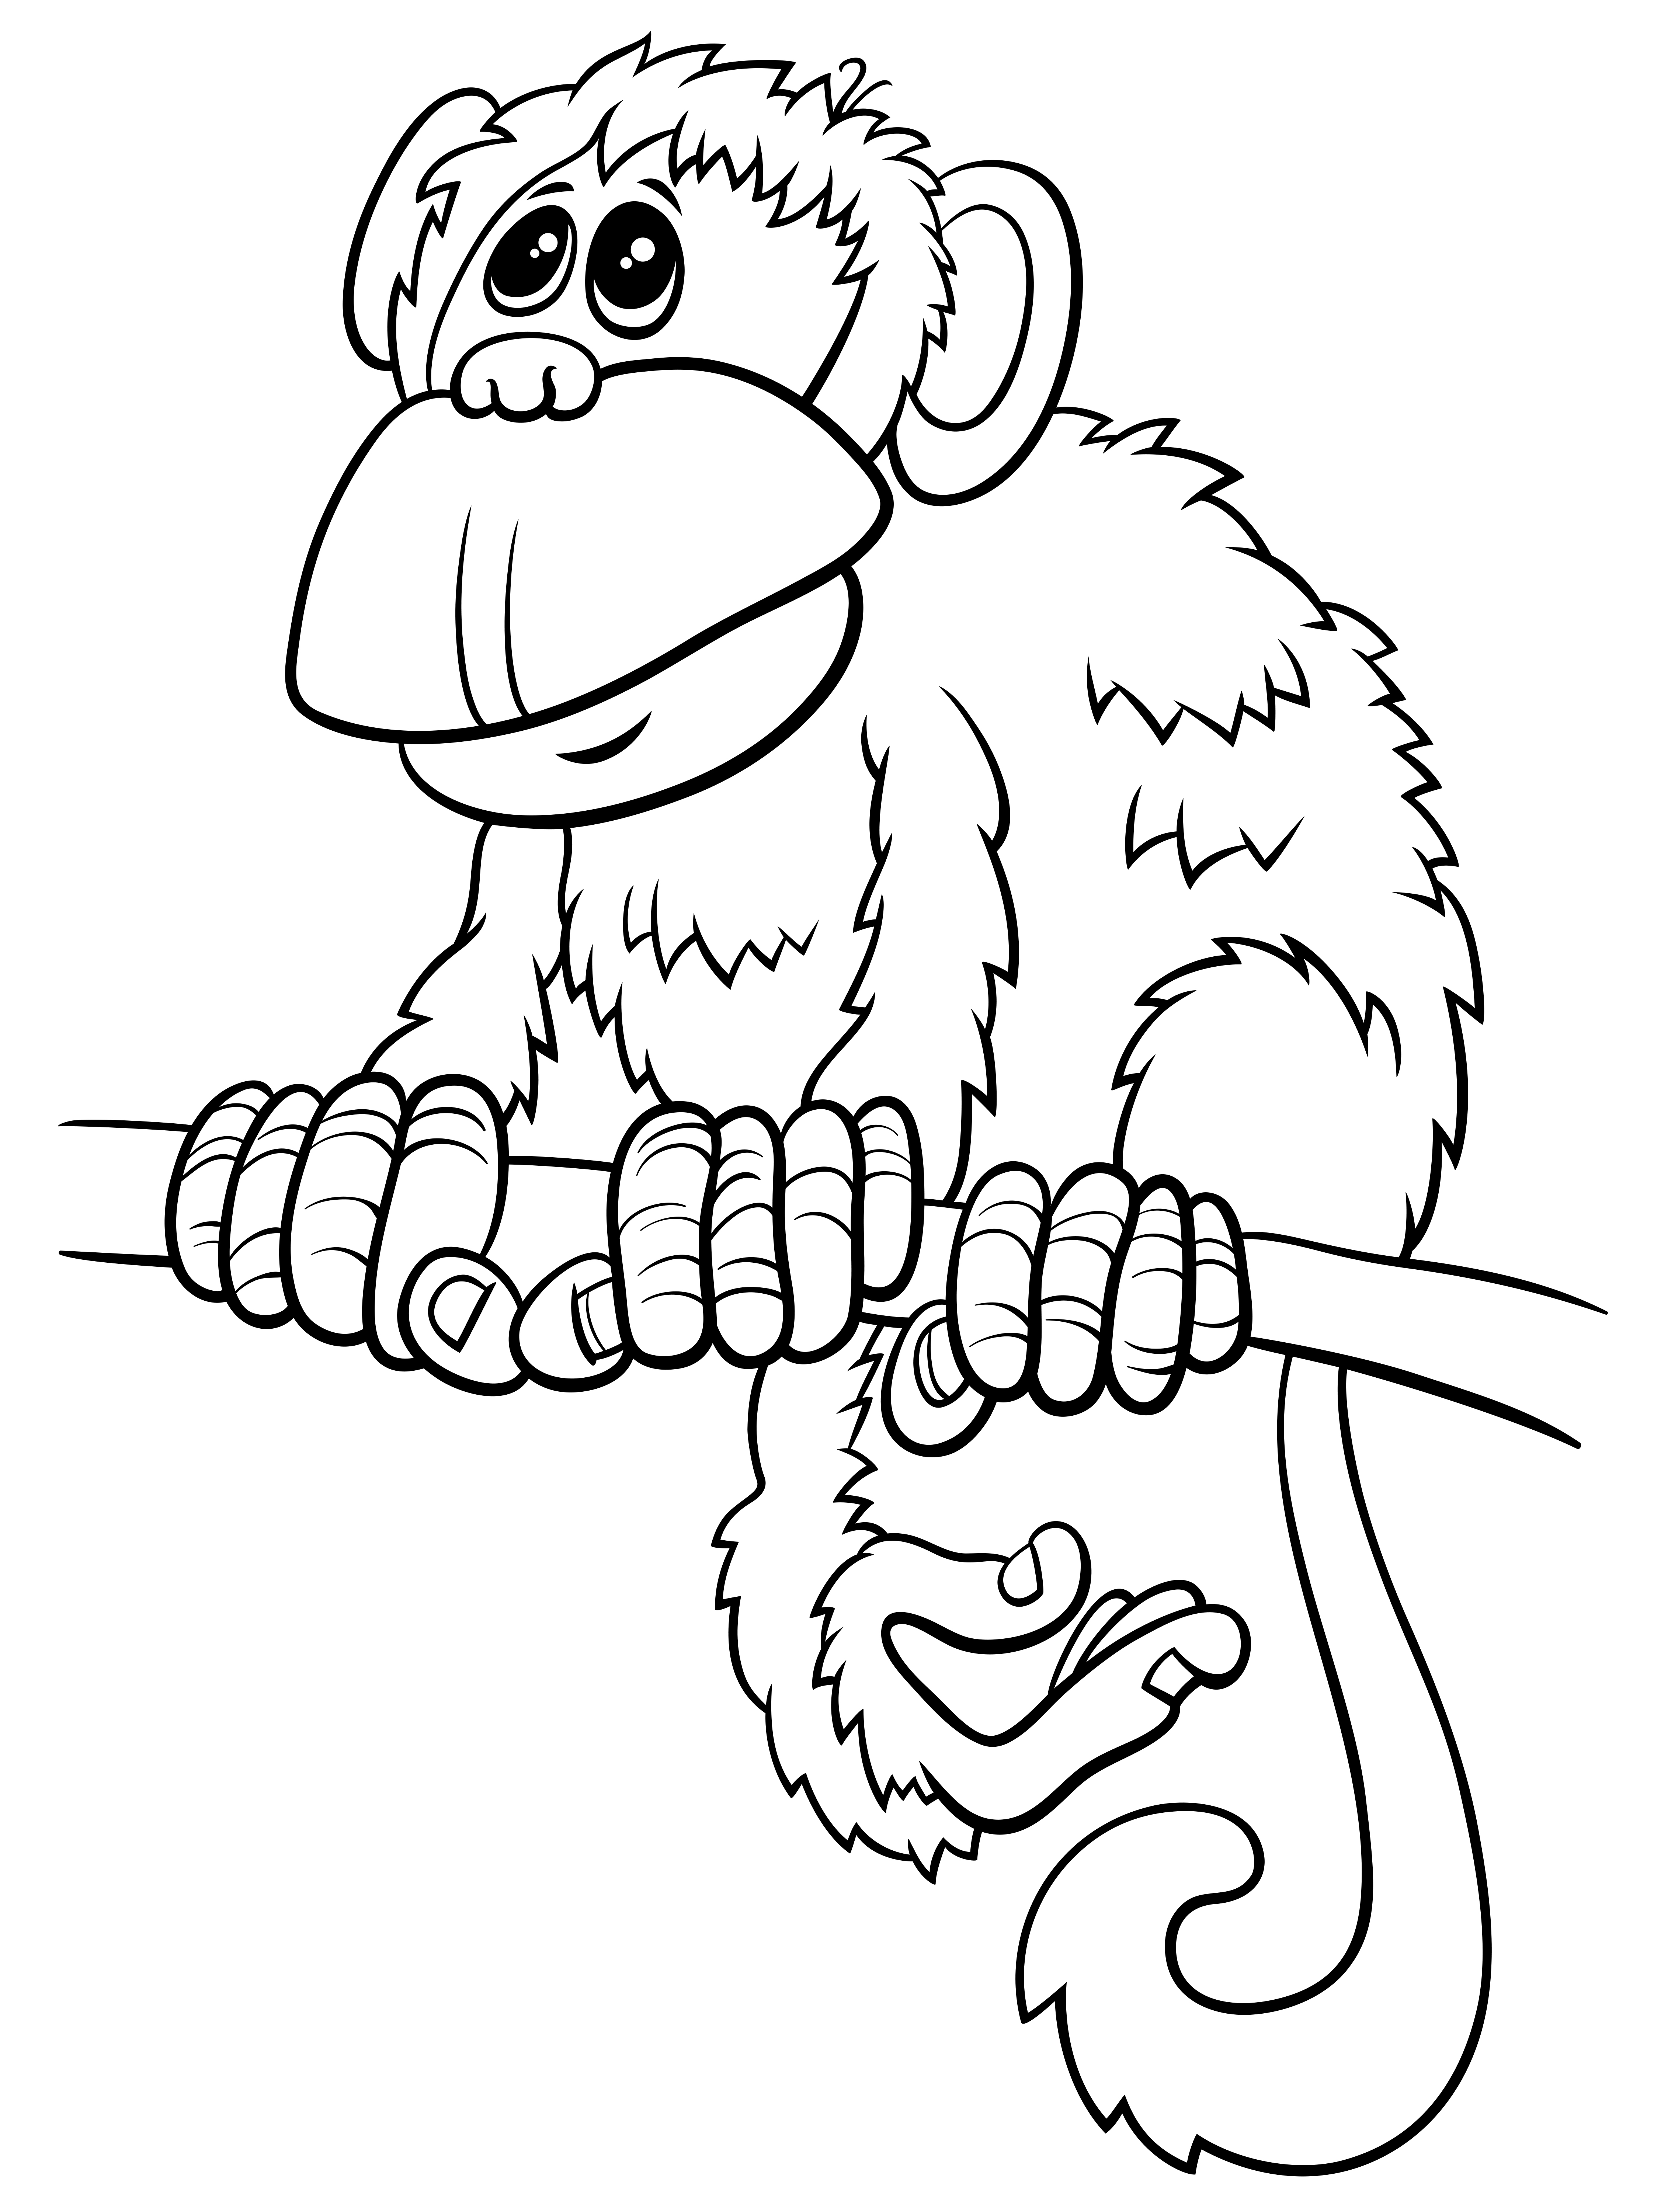 Desenho de macacos grátis para descarregar e colorir - Macacos